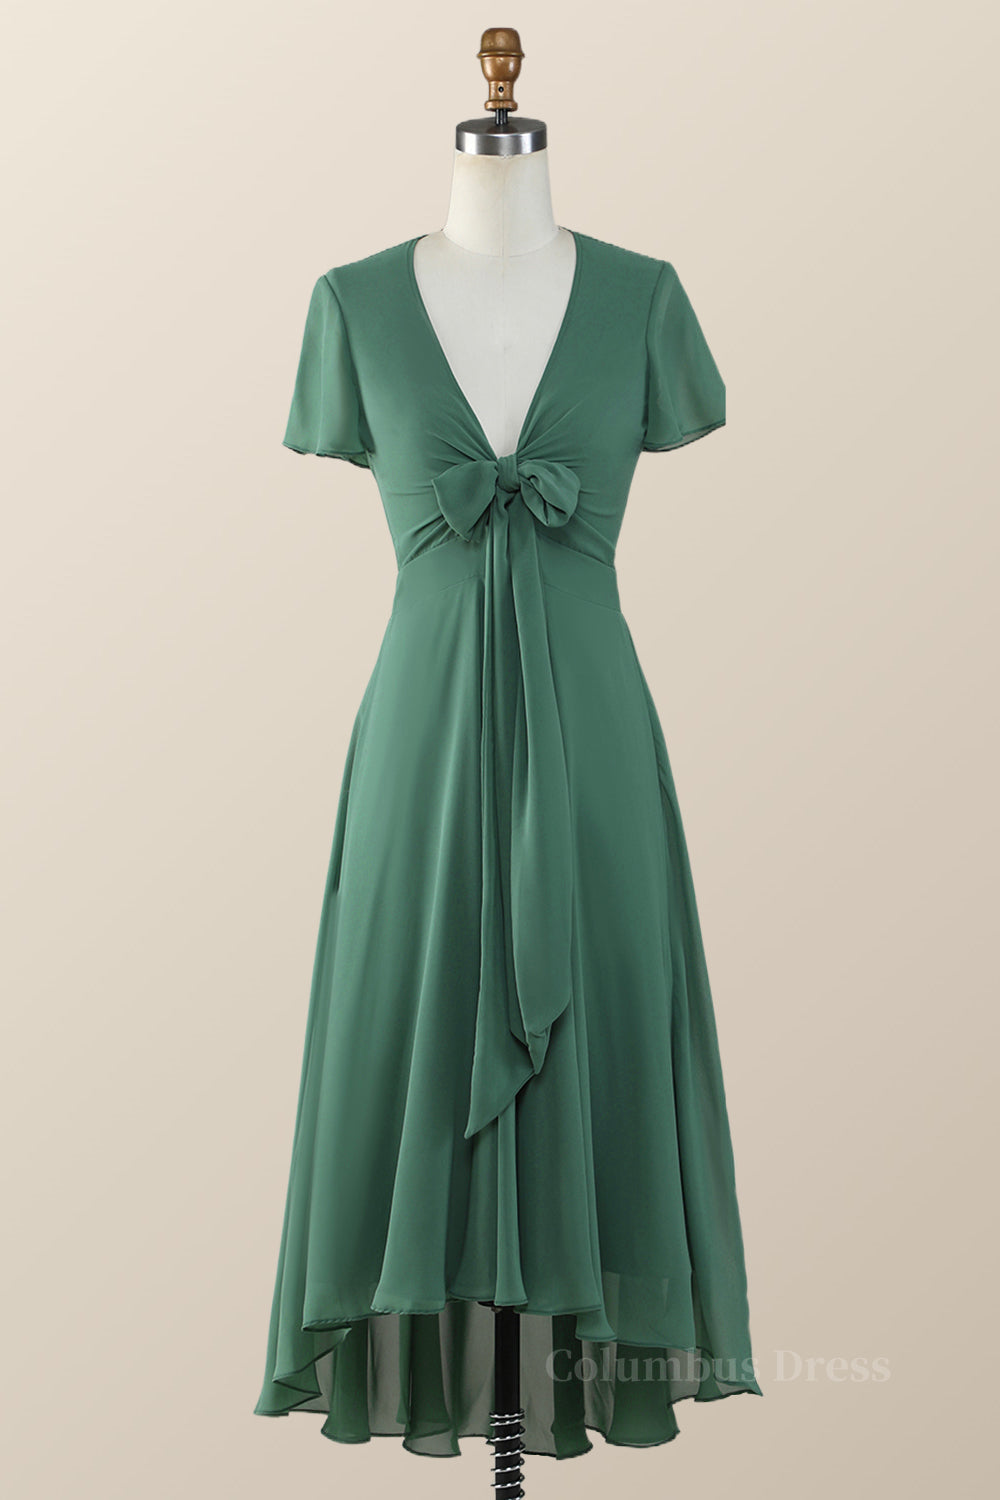 Knot Front Green Chiffon Long Corset Bridesmaid Dress outfit, Bridesmaid Dress Mauve